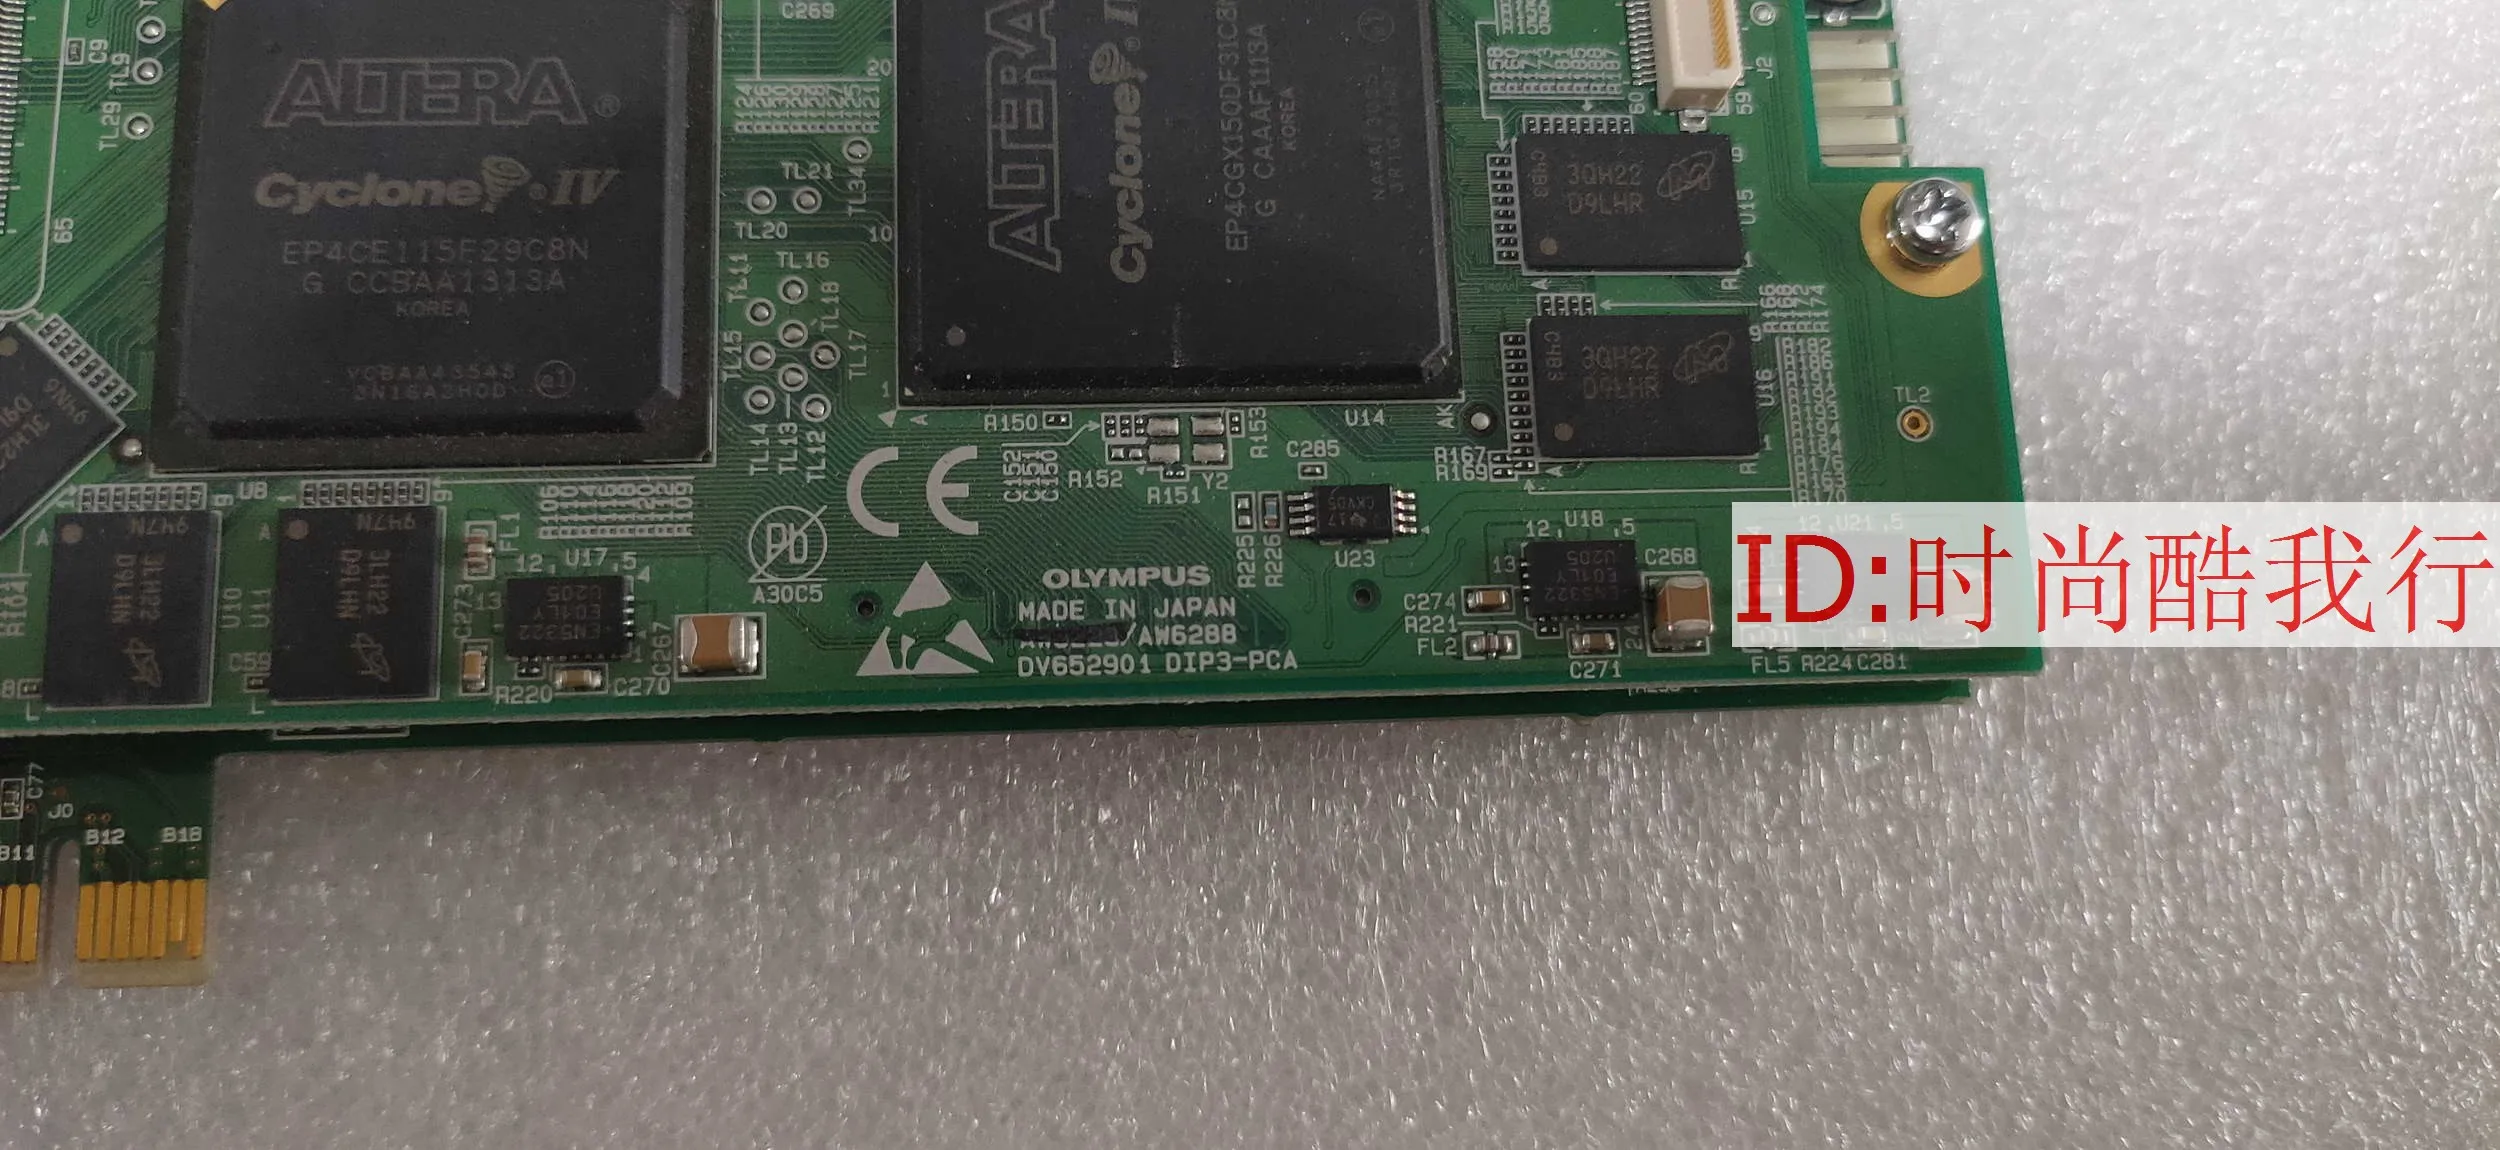 DSX-PCI AW6288 DV65290 1 DIP3-PCA